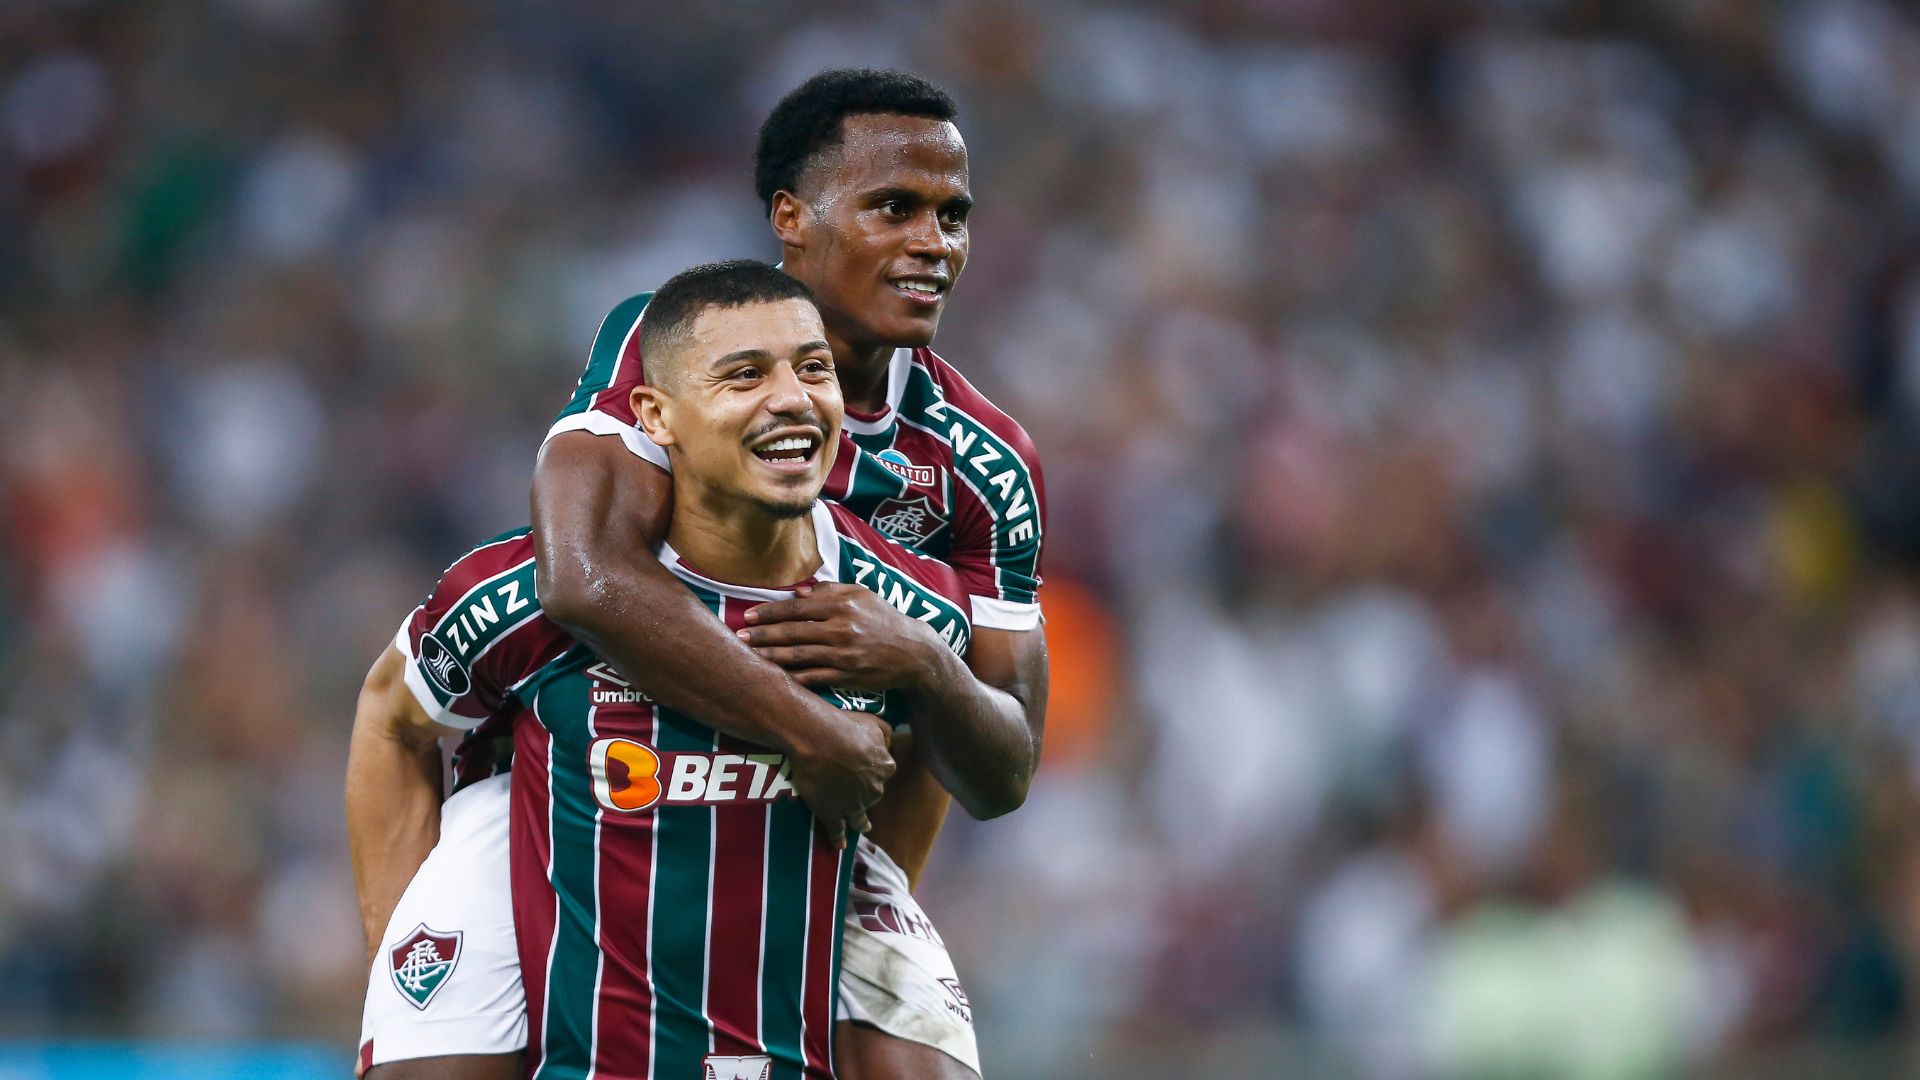 André e Arias comemorando classificação do Fluminense na Libertadores (Crédito: Getty Images)